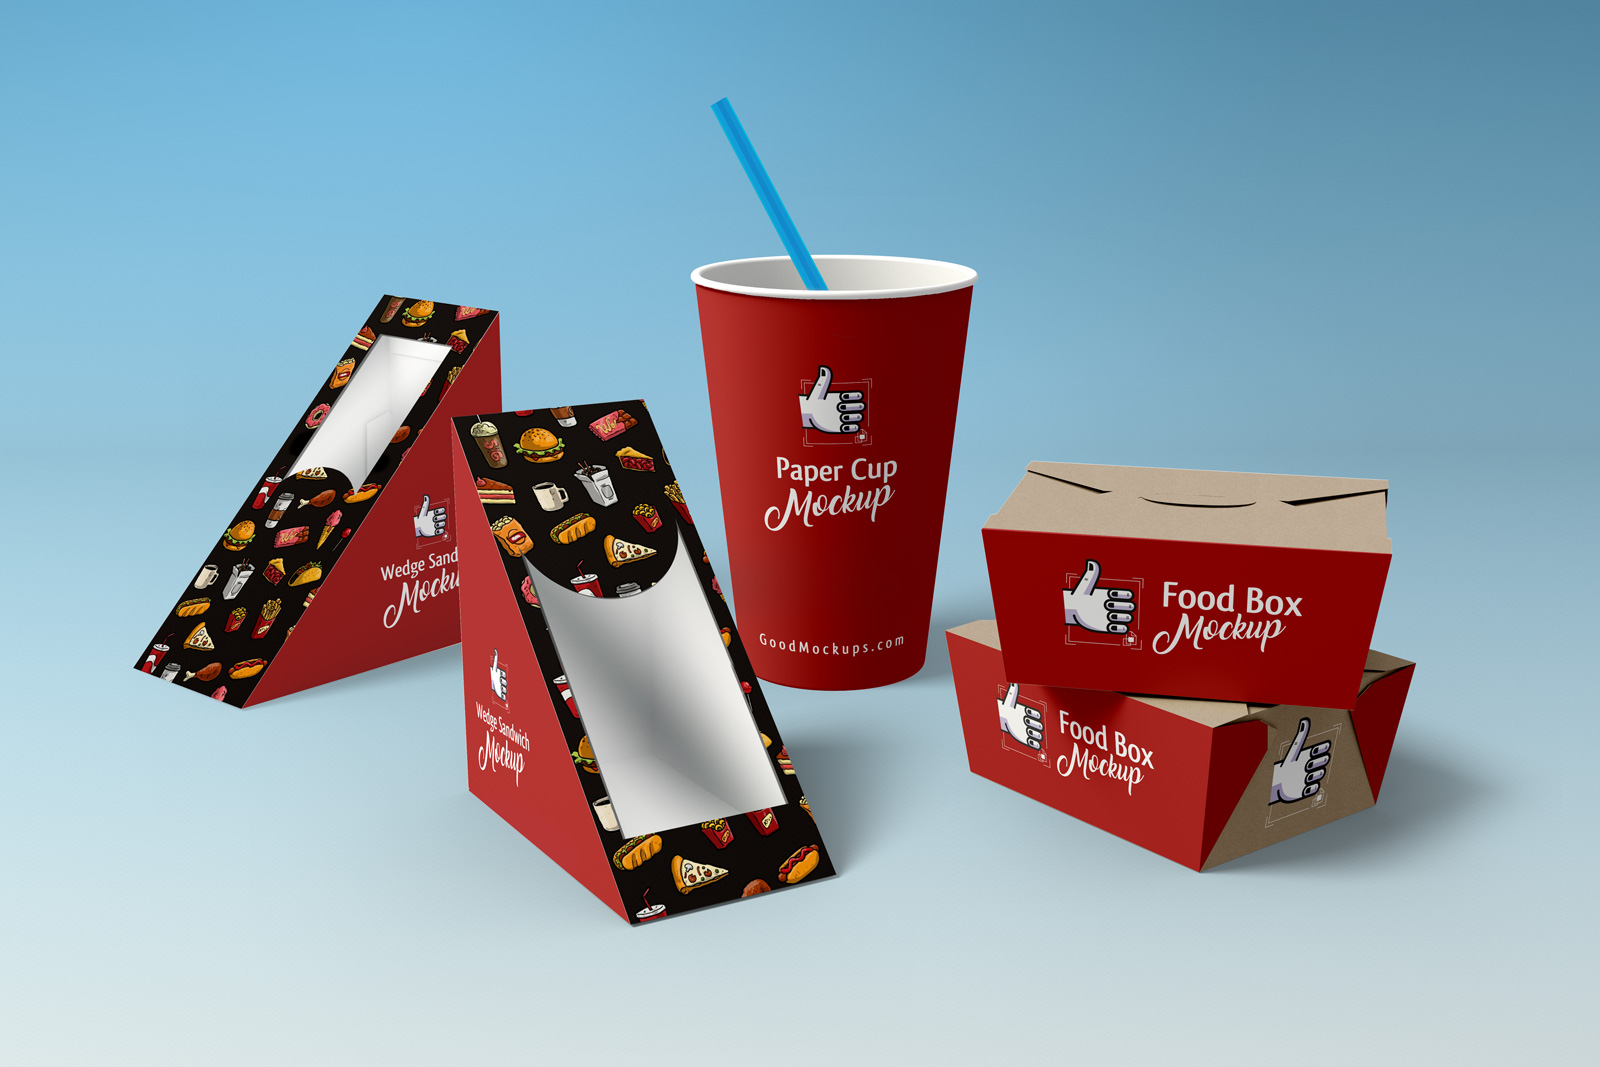 https://creartajans.com/works/isitan/upload/files/food/Free-Wedge-Sandwich-Food-Box-Paper-Cup-Packaging-Mockup-PSD.jpg